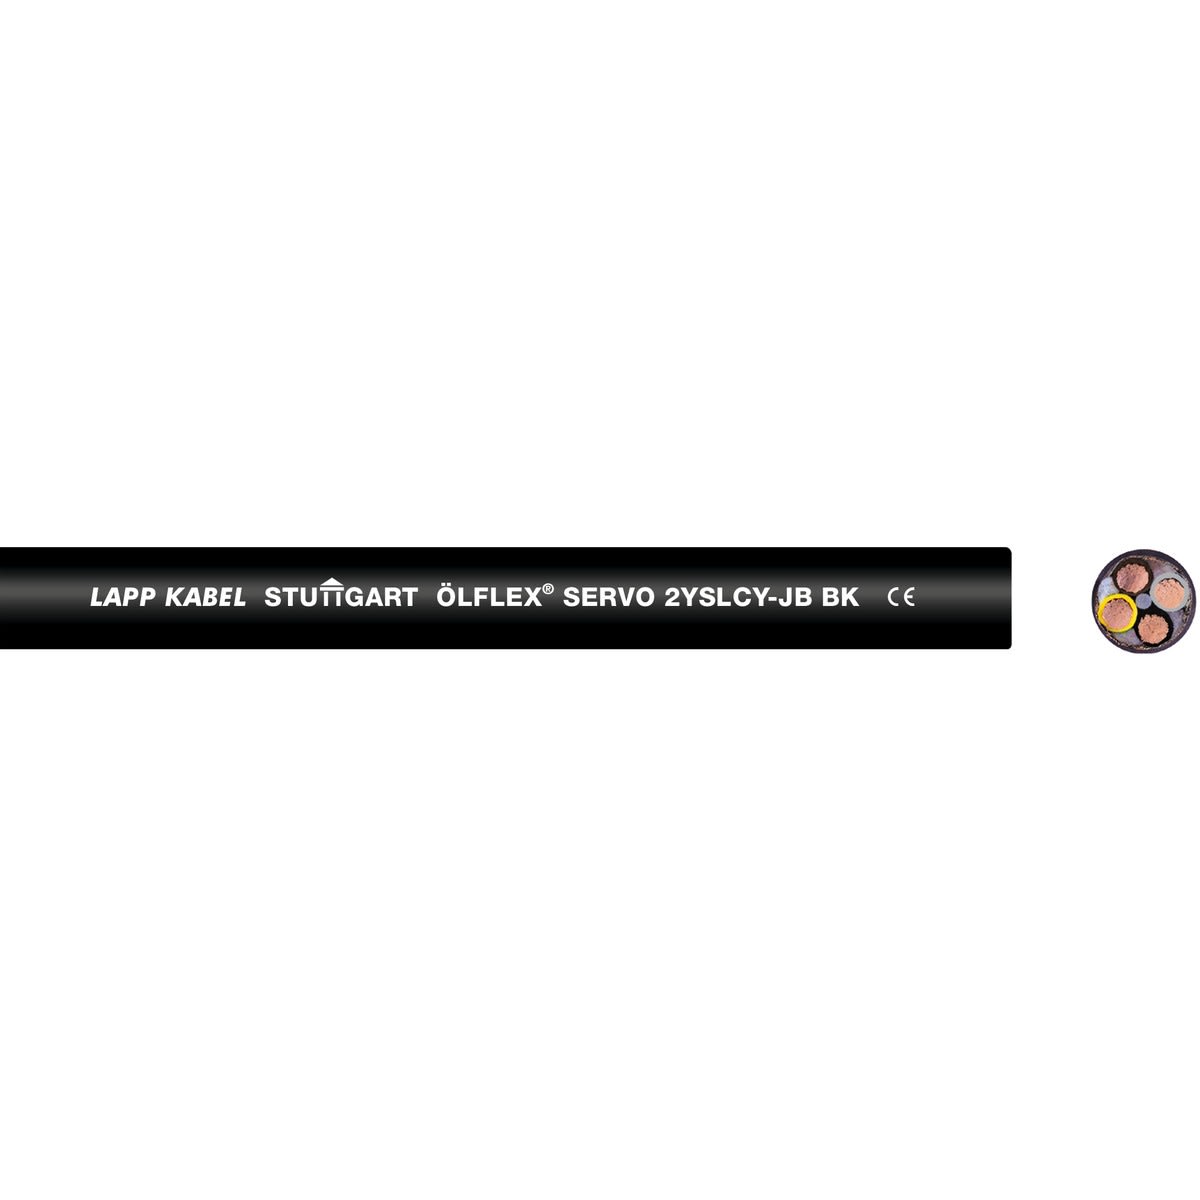 Lapp - ÖLFLEX SERVO 2YSLCY-JB BK 4G6